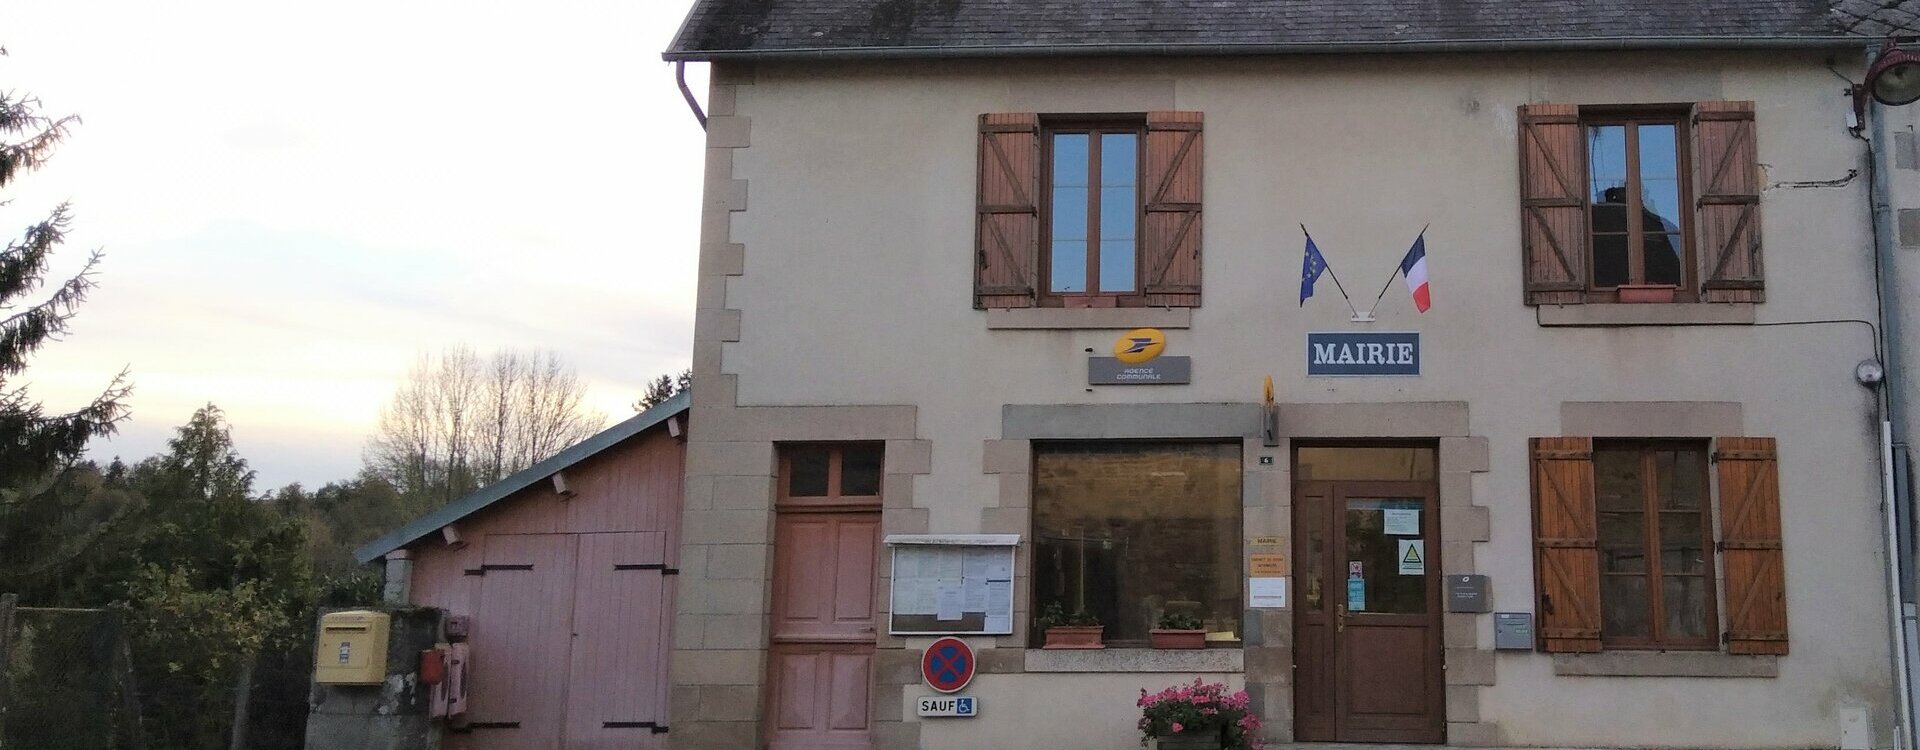 Mentions légales du site de la mairie de Janaillat (23) Creuse en région Nouvelle-Aquitaine